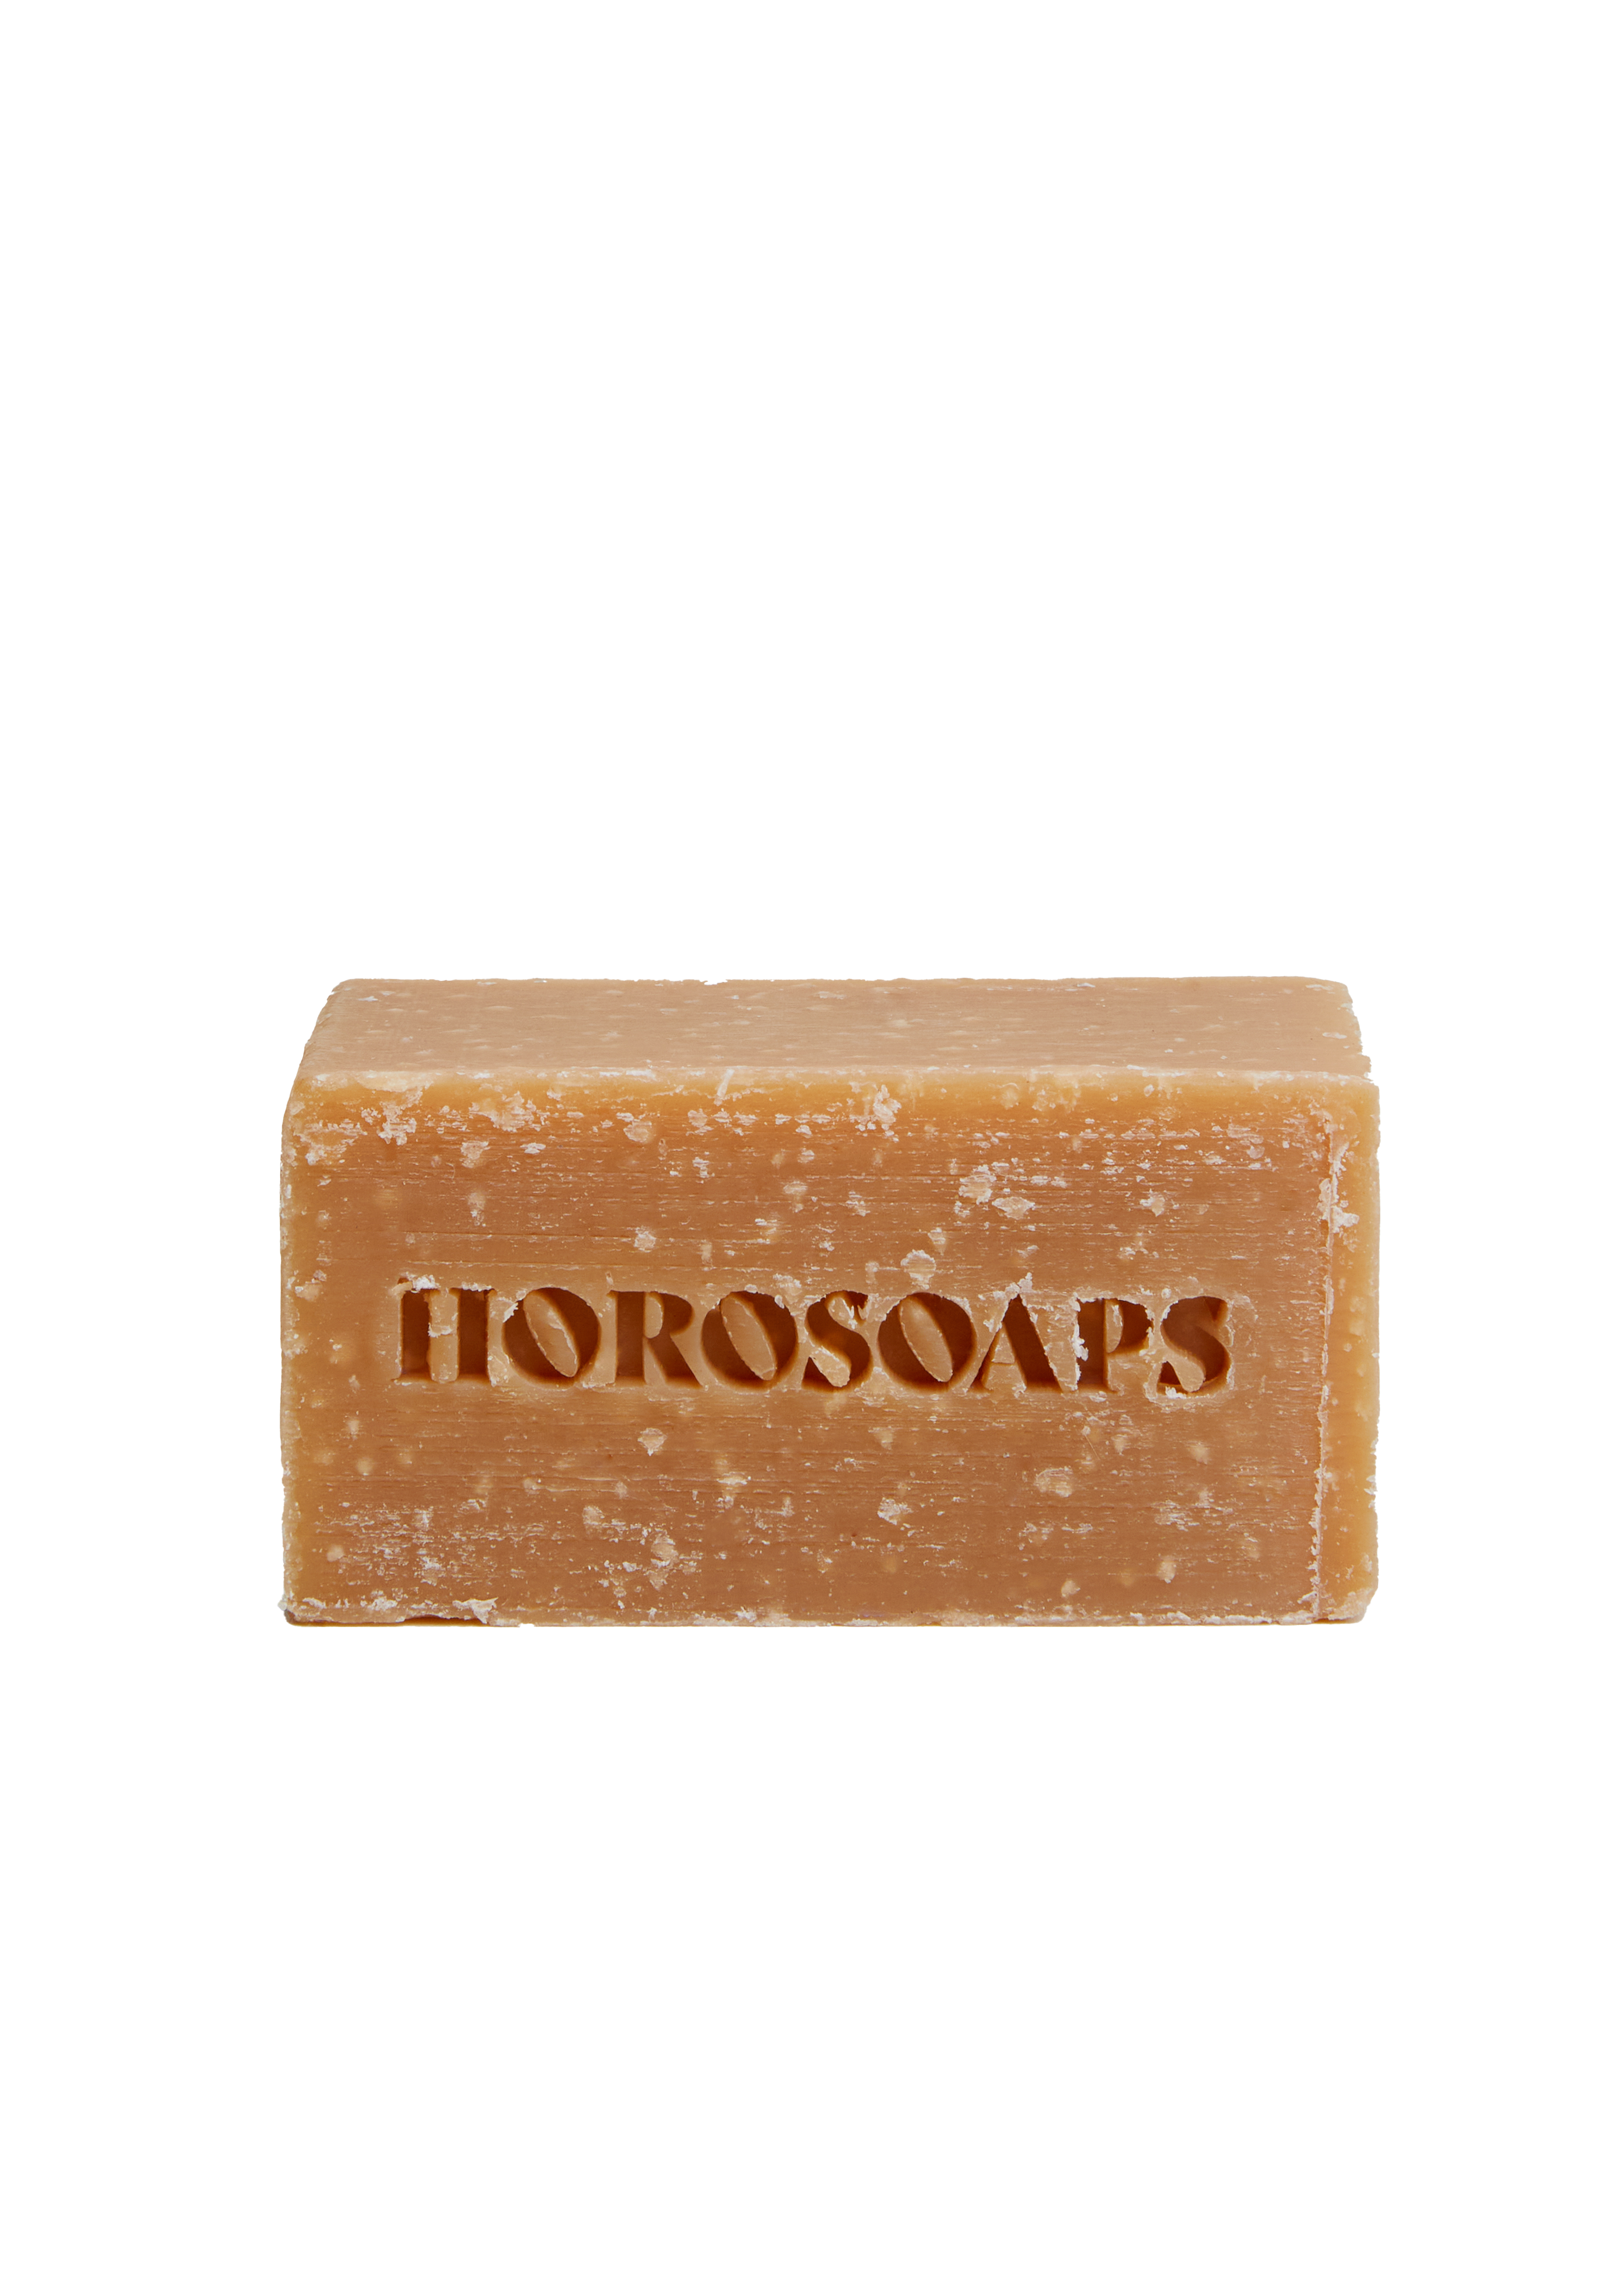 Libra Soap Bar